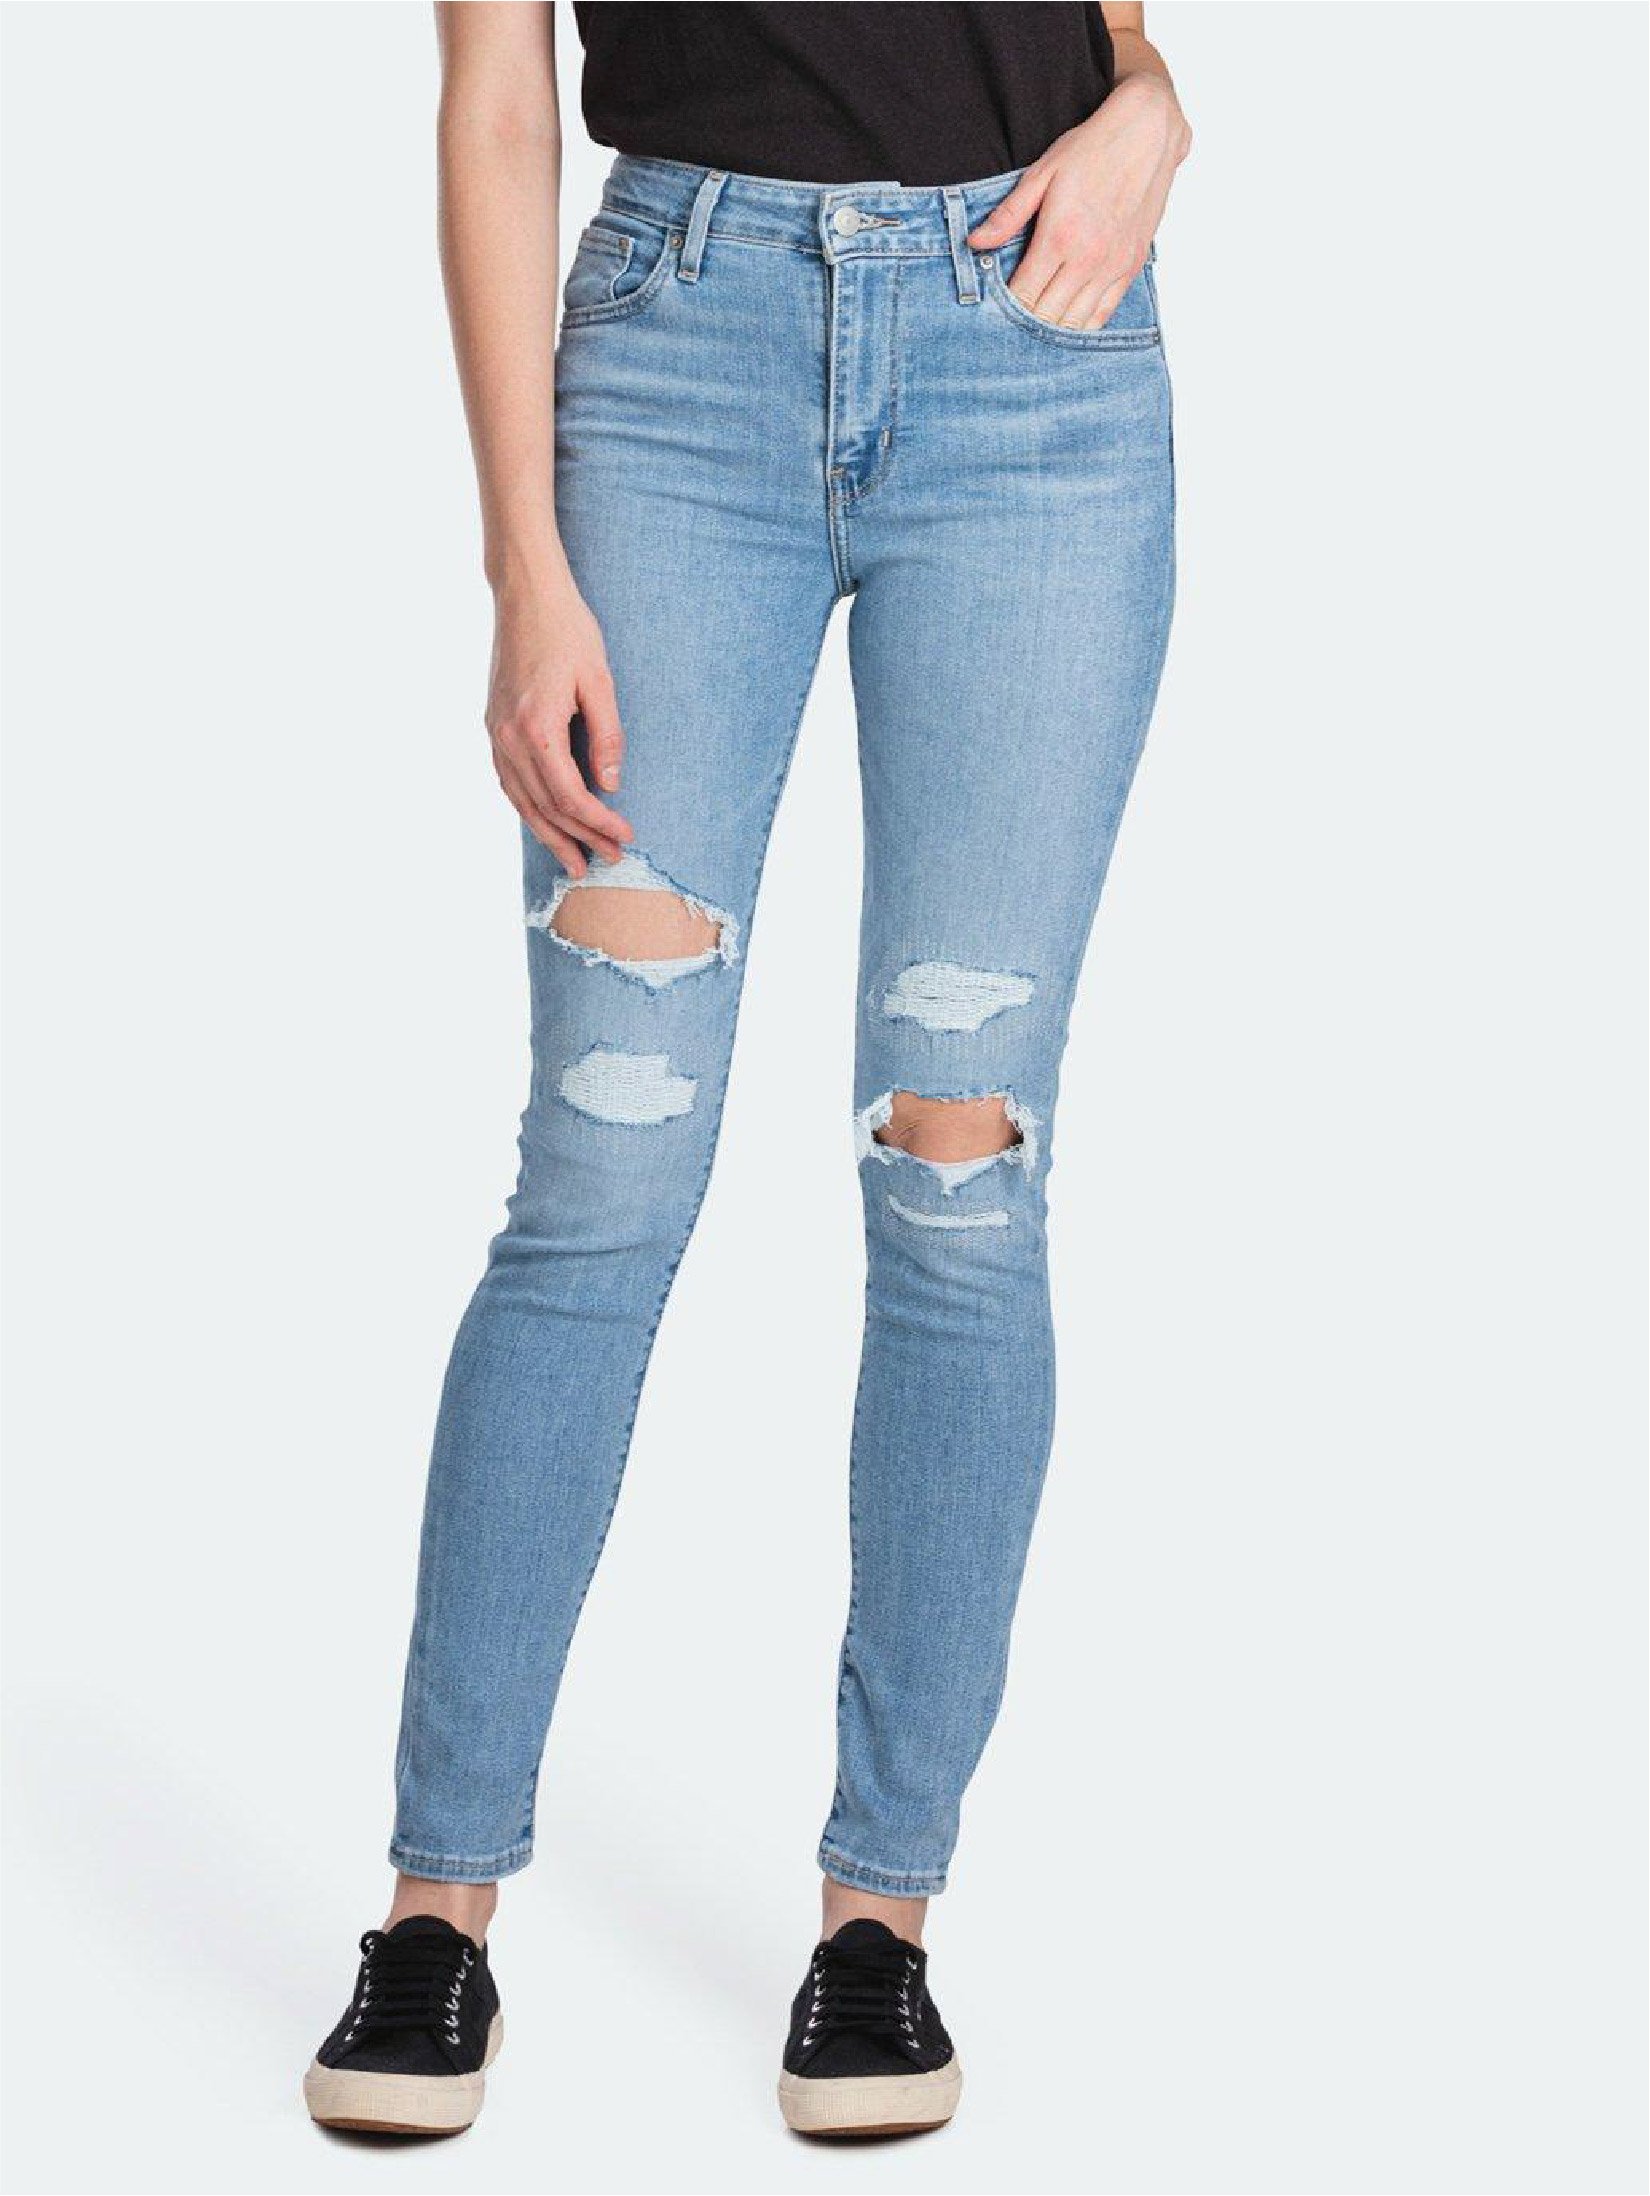 levis jeans cheap